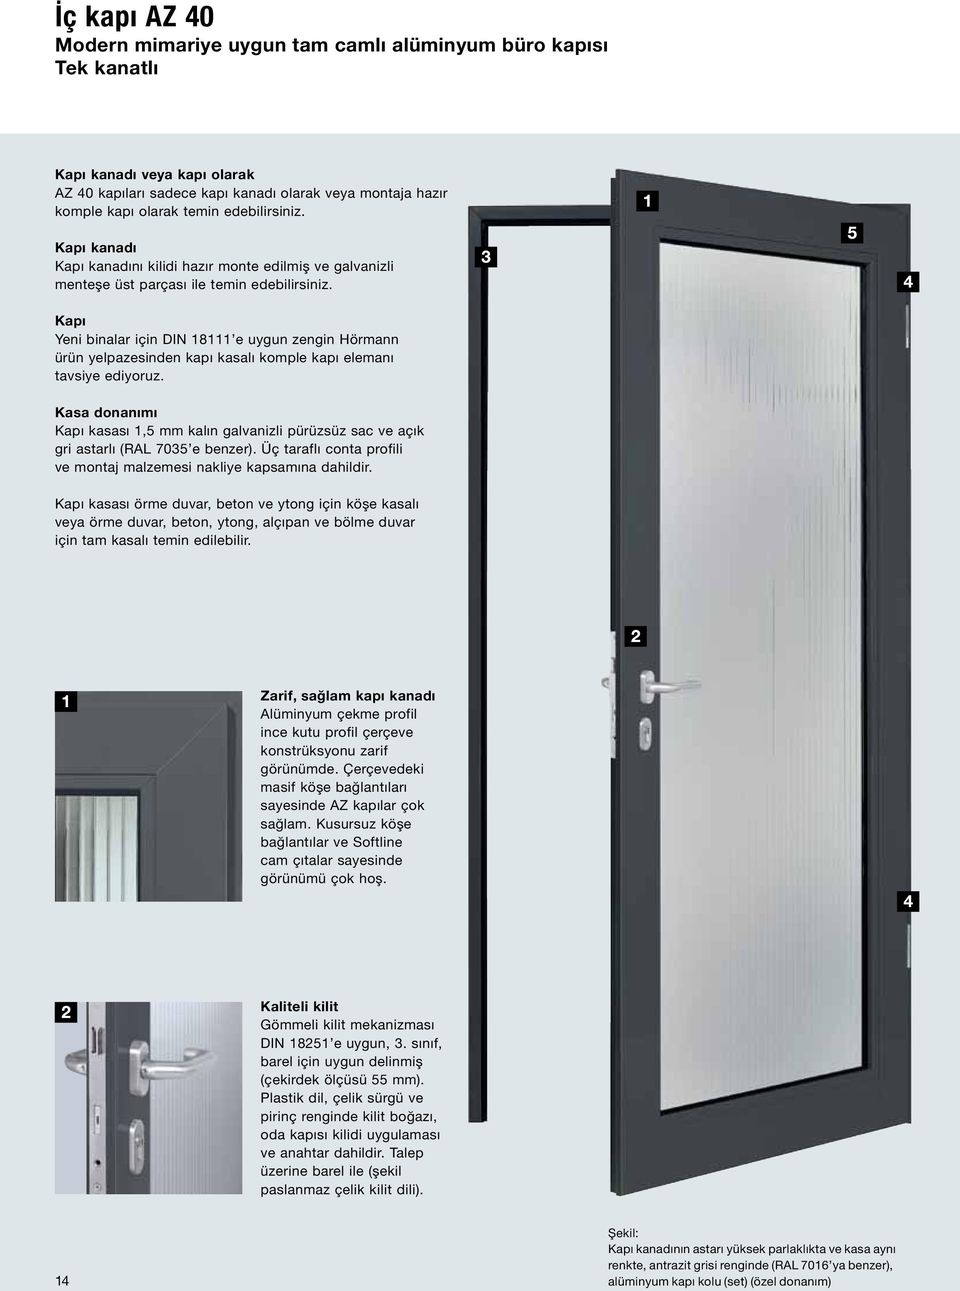 Kapı Yeni binalar için DIN 18111 e uygun zengin Hörmann ürün yelpazesinden kapı kasalı komple kapı elemanı tavsiye ediyoruz.